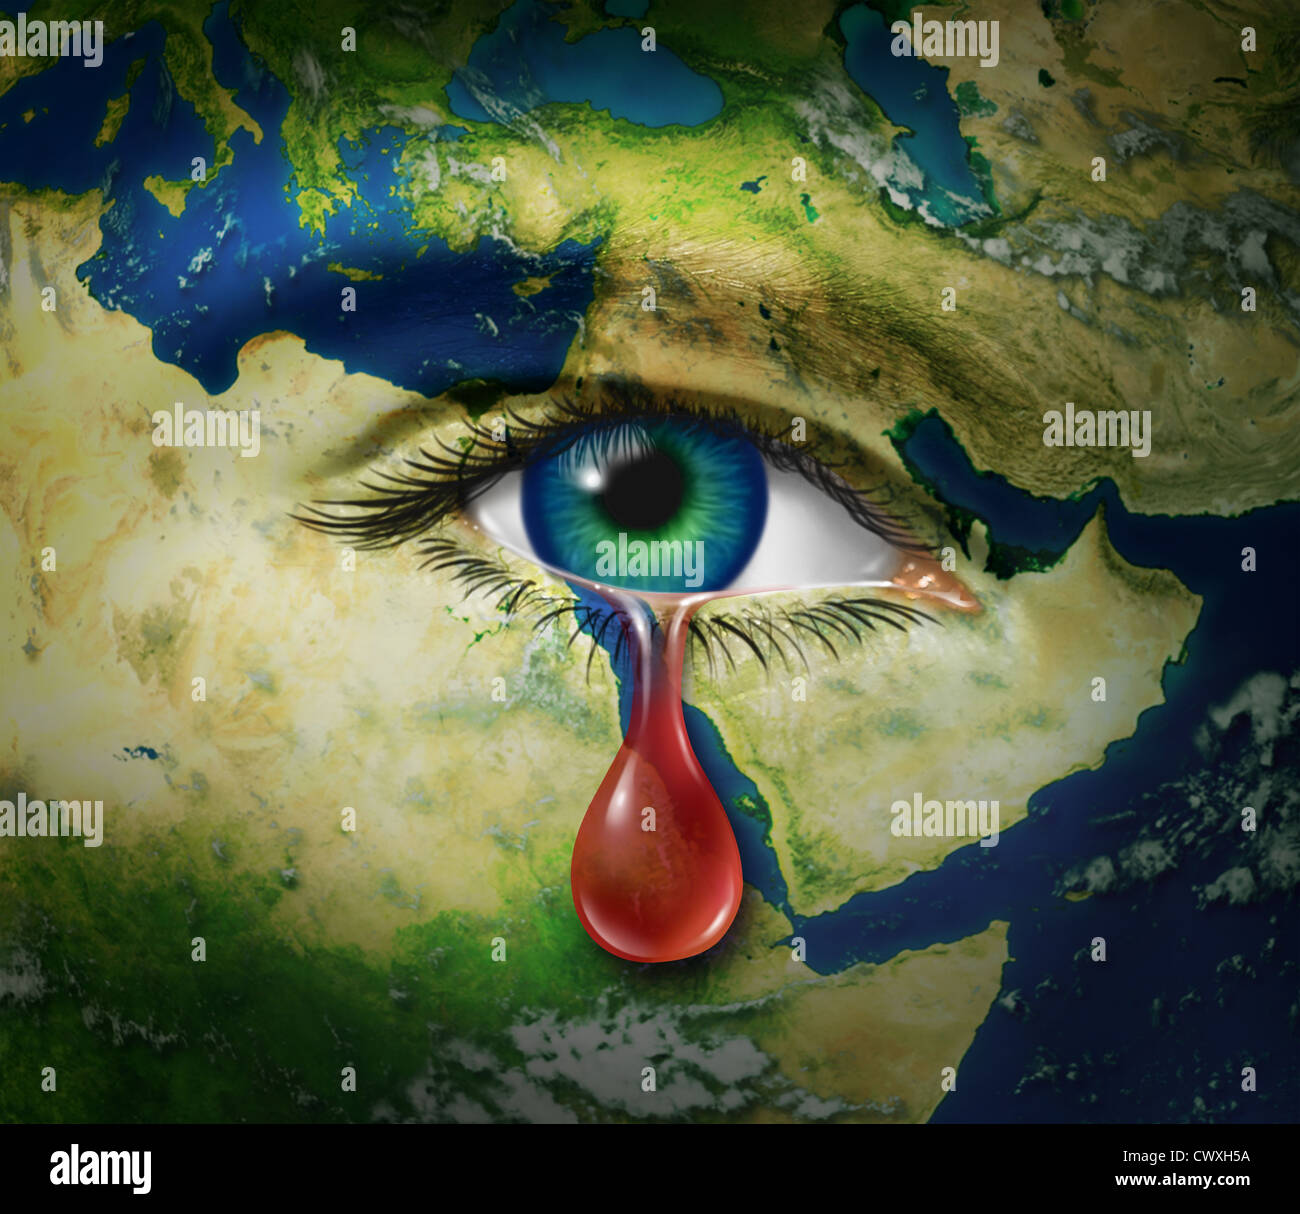 La violence au Moyen-Orient comme une carte de pays comme l'Egypte Syrie Iran Israël Arabie Saoudite Libye Yémen l'Iraq avec un oeil qui pleure une larme de sang rouge comme symbole de la brutalité et de victimes de guerre et de conflit. Banque D'Images